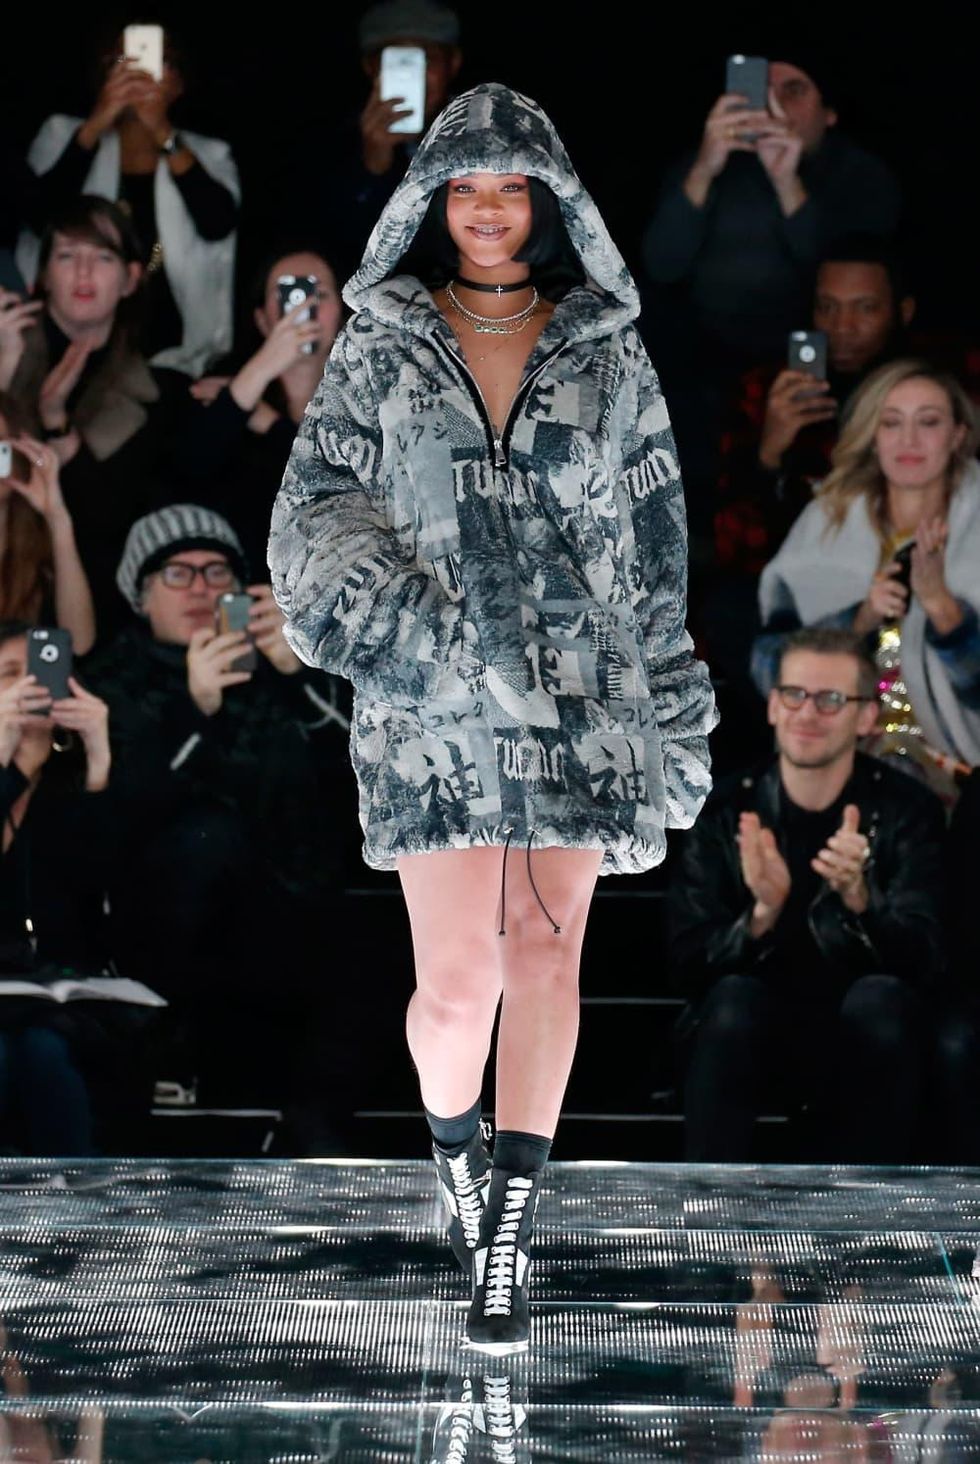 Rihanna Fenty x Puma show at New York Fashion Week